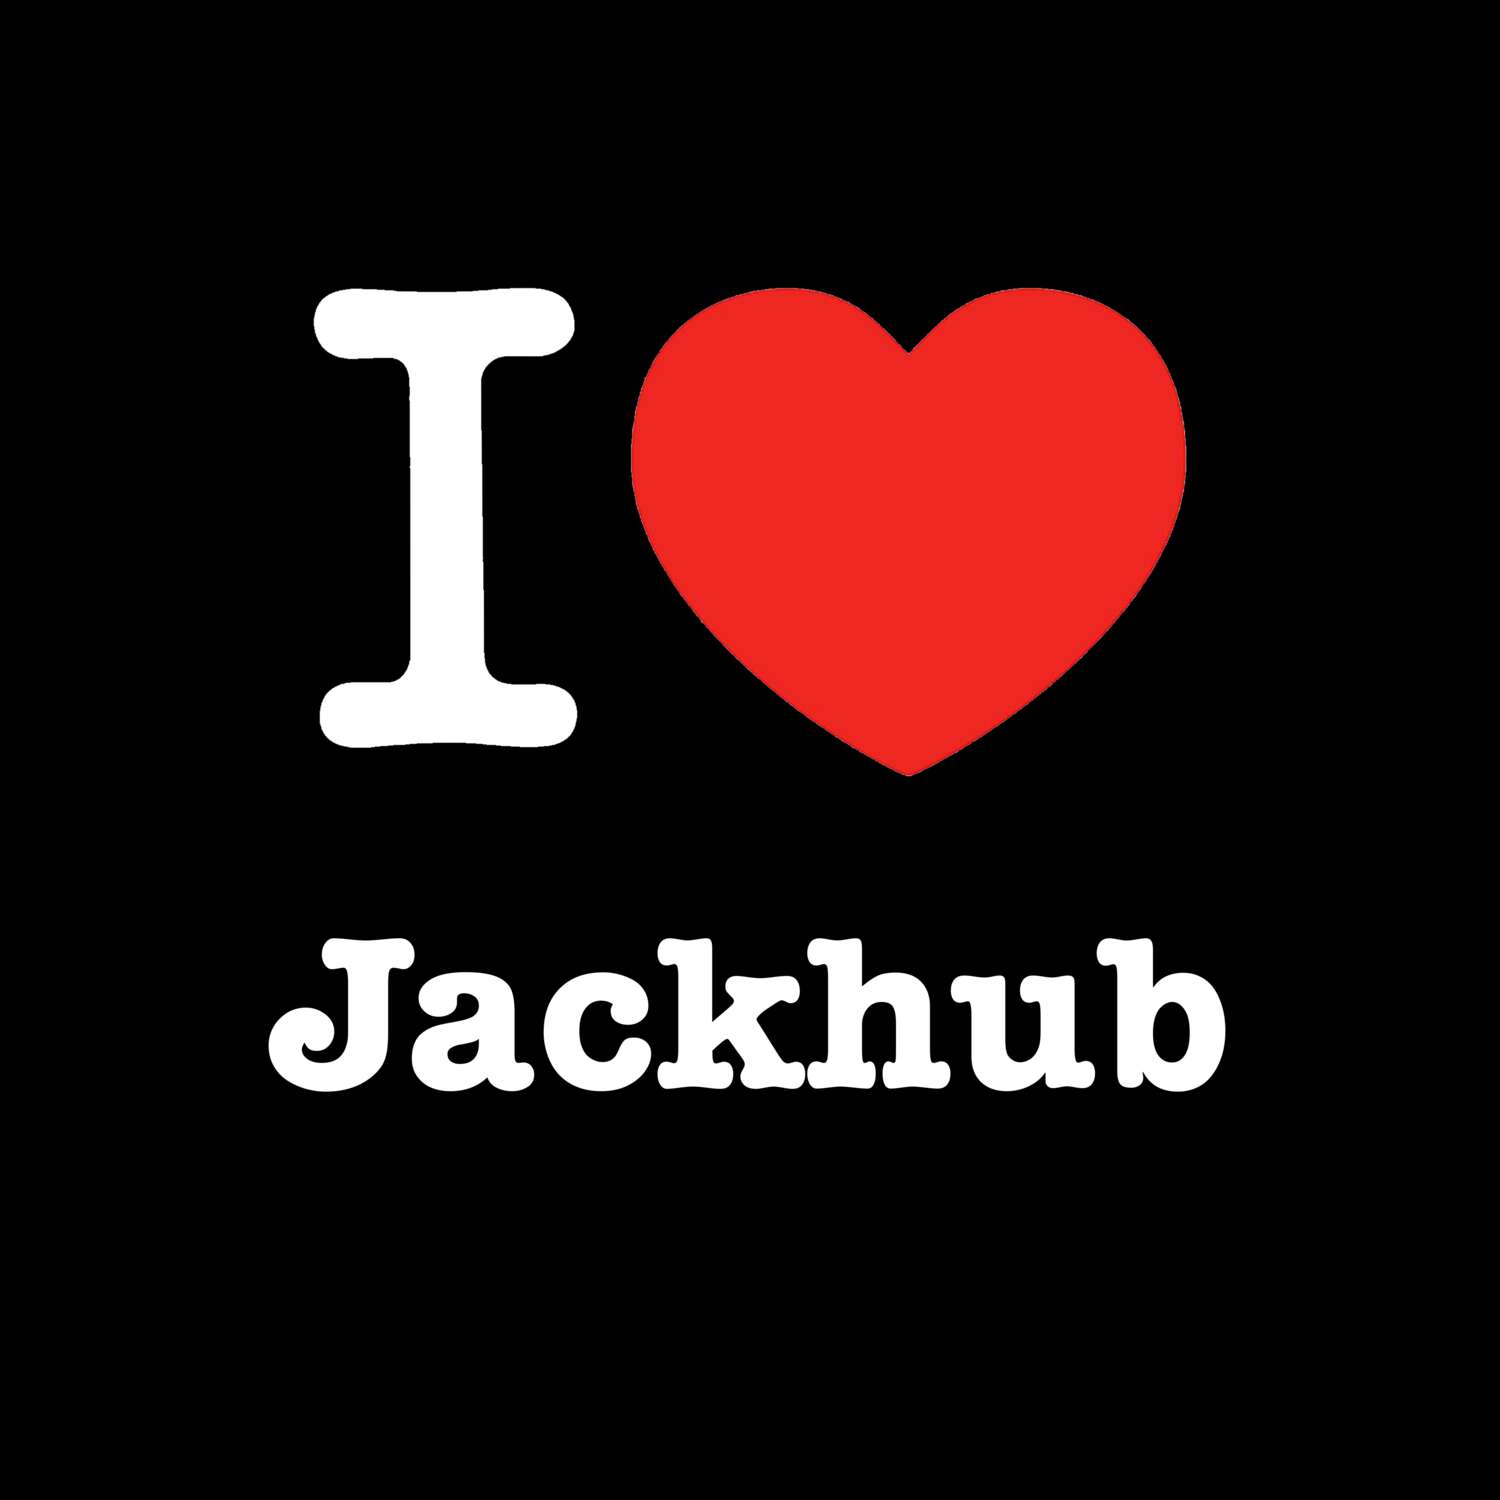 Jackhub T-Shirt »I love«